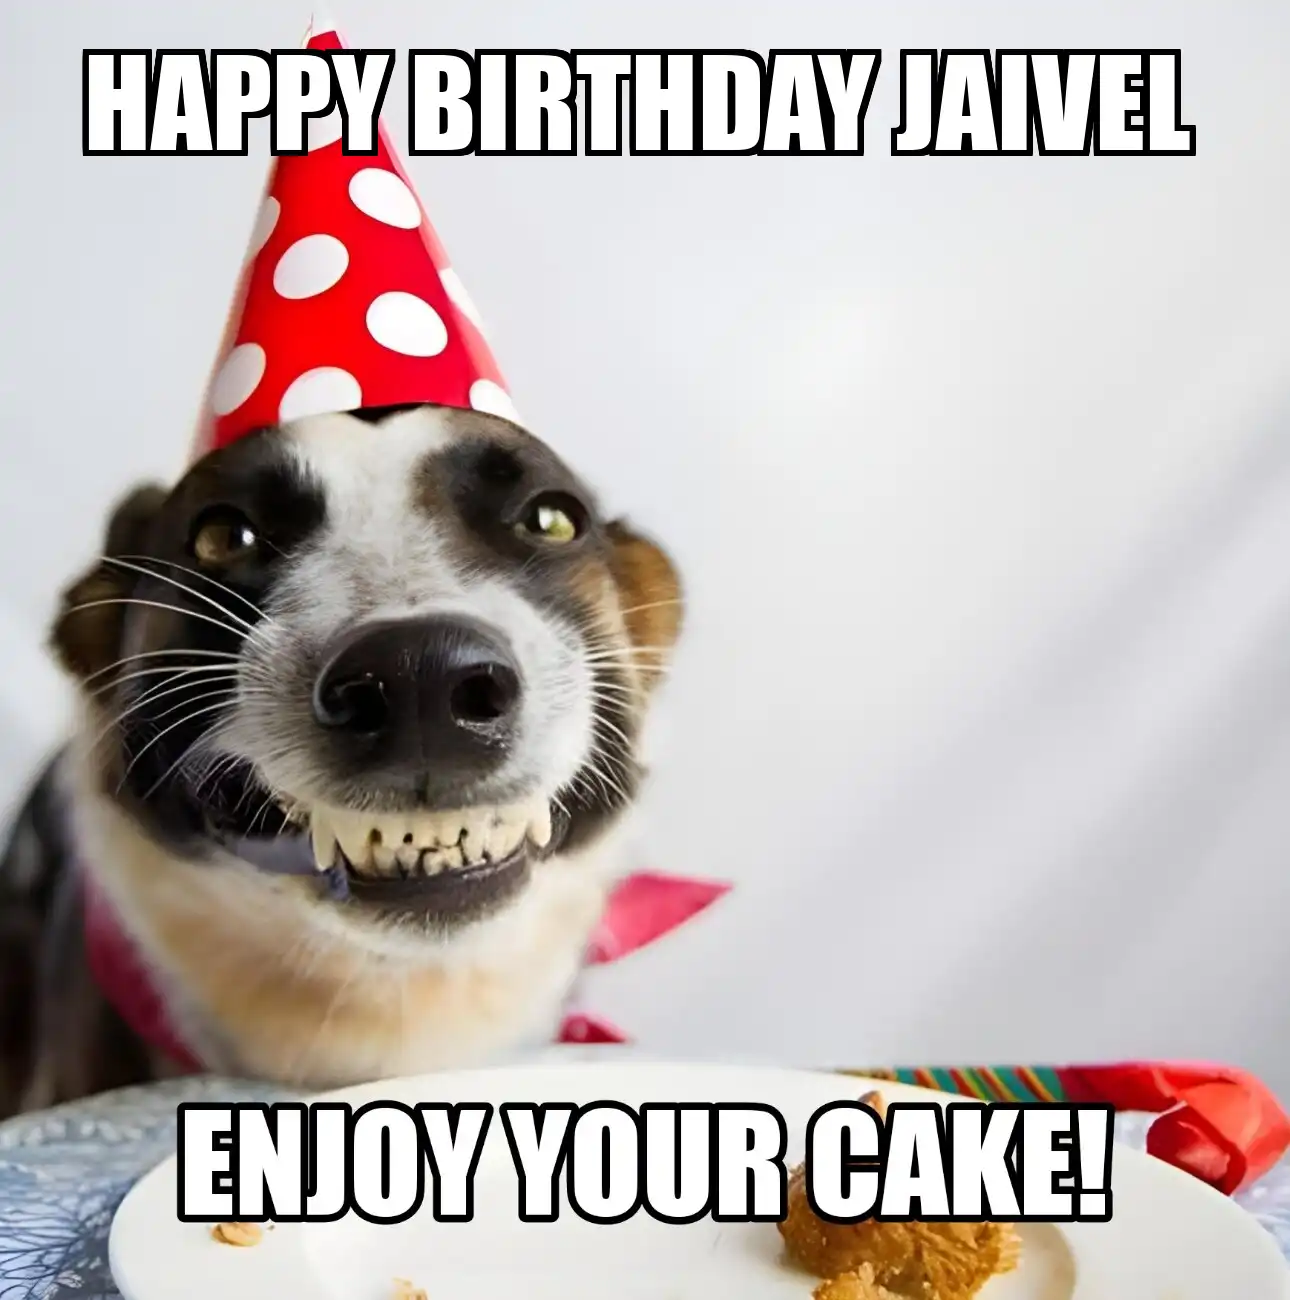 Happy Birthday Jaivel Enjoy Your Cake Dog Meme